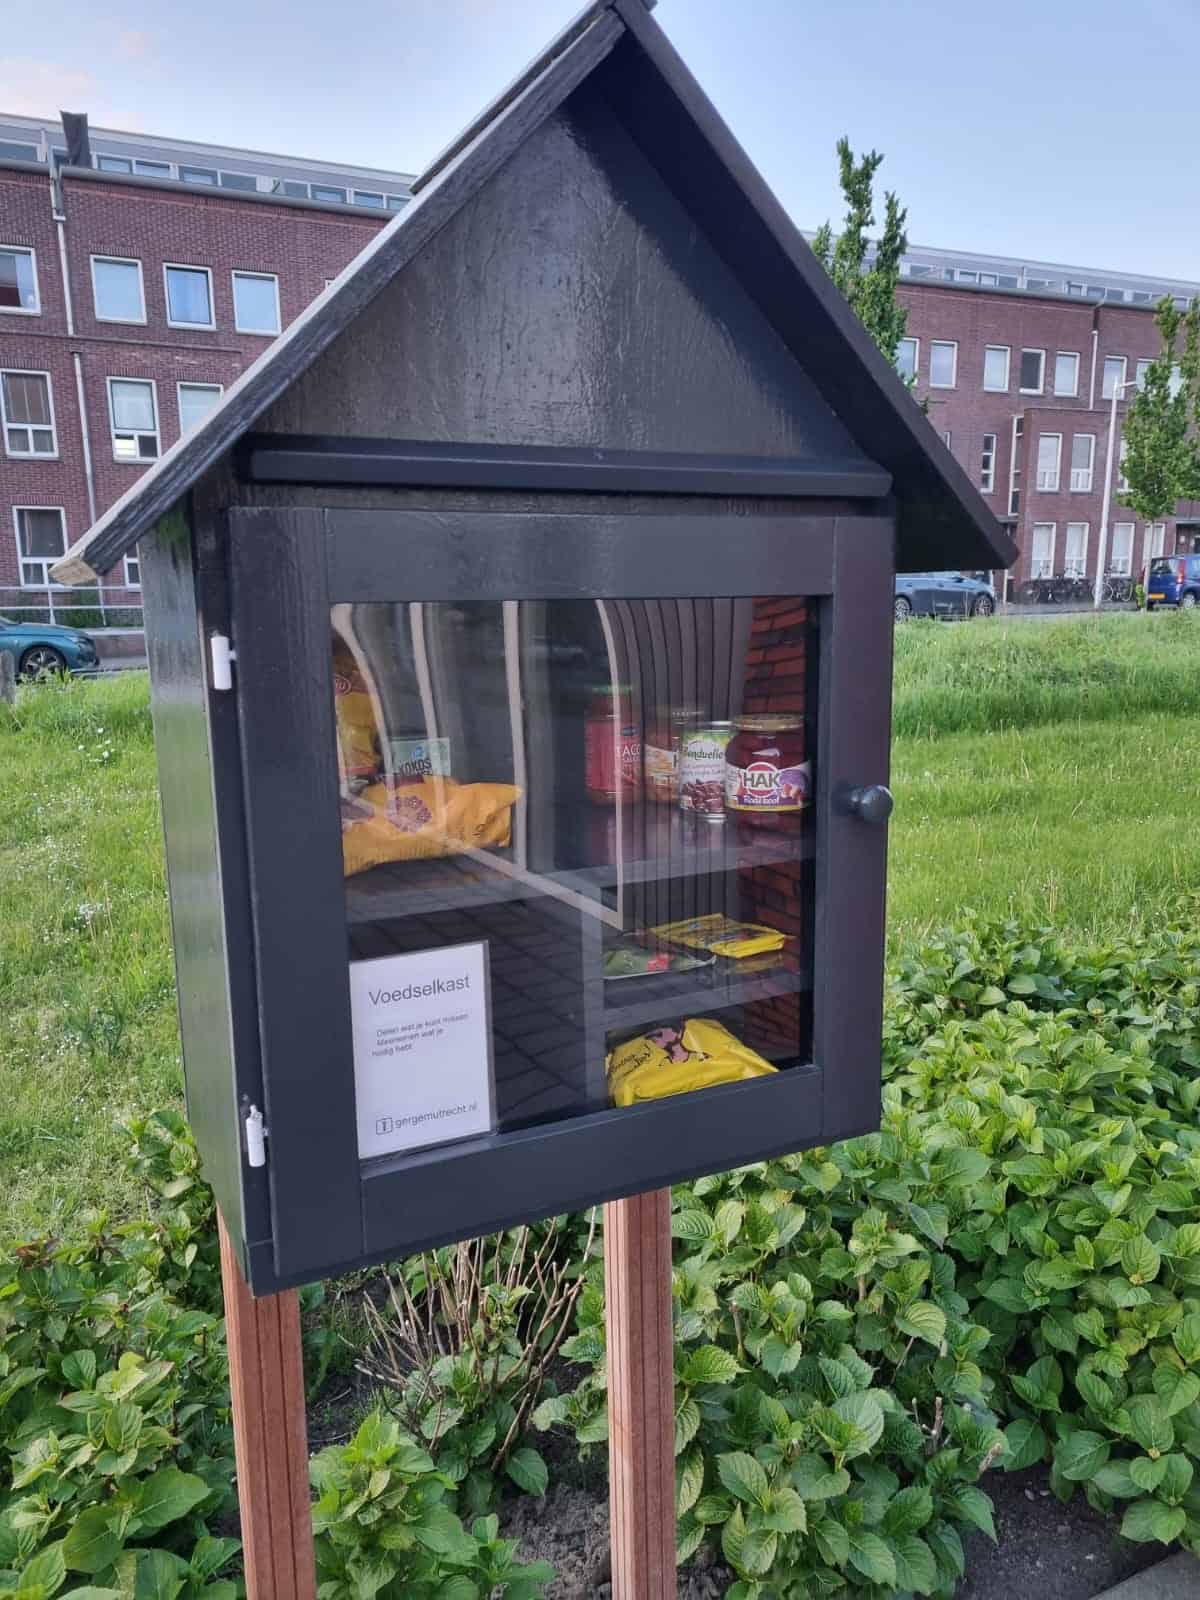 Voedselkasje Utrecht Leidsche Rijn